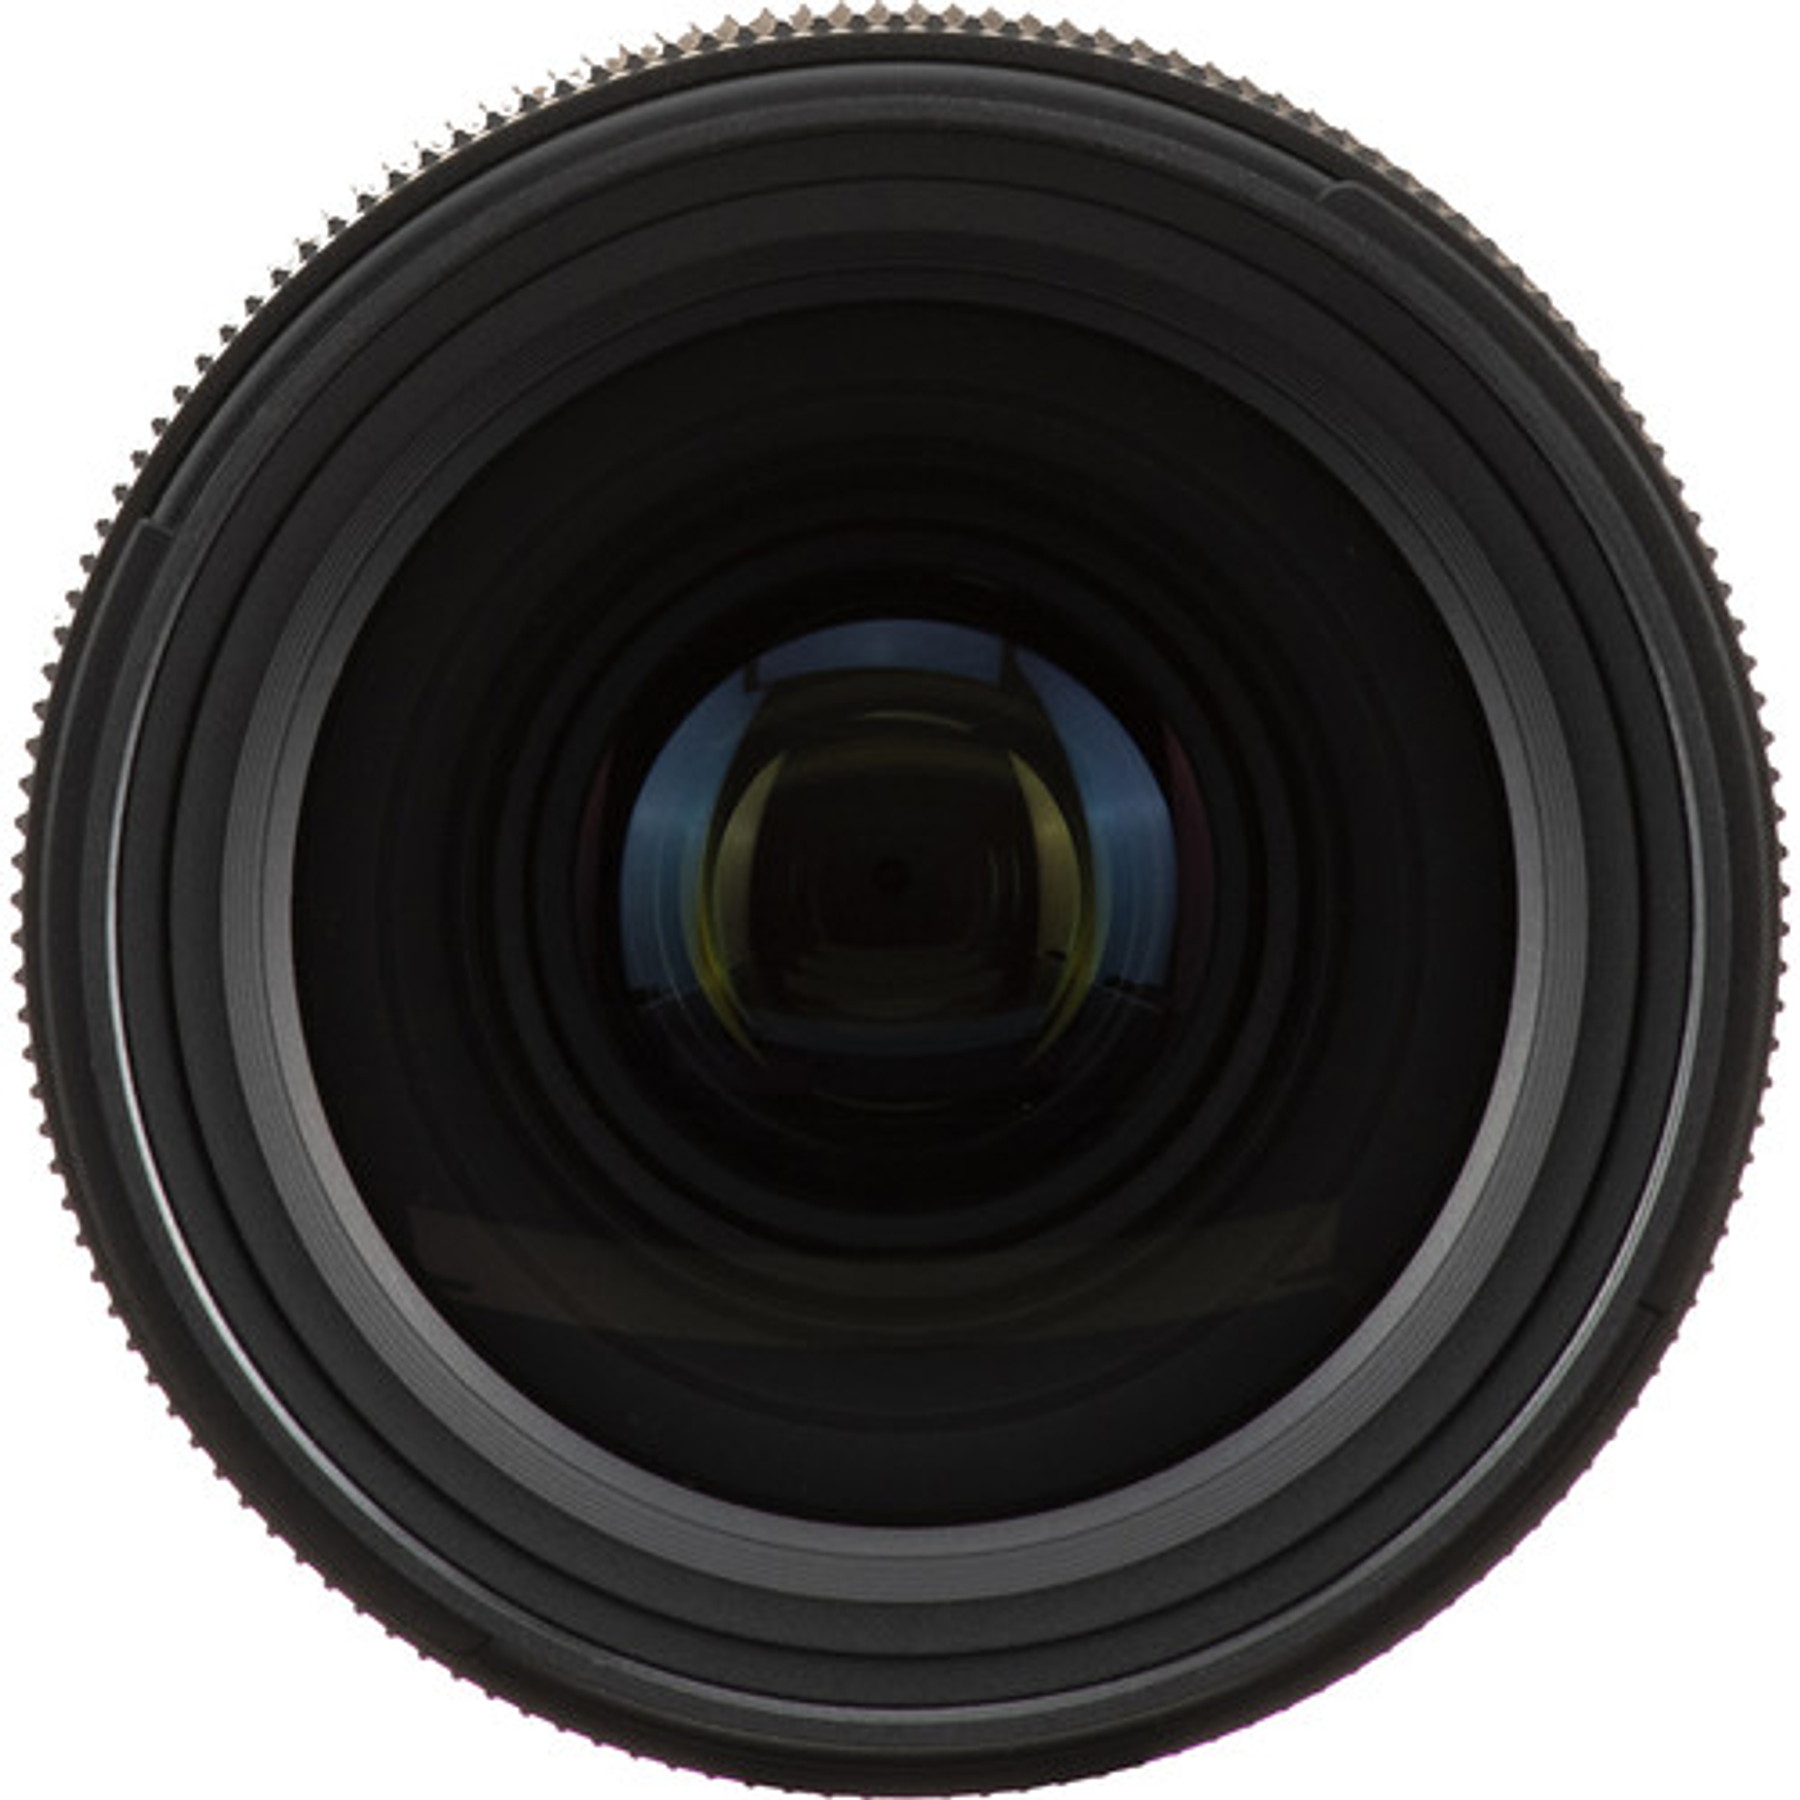 Tamron SP 35mm. F/1,4 Di VC USD con parasol Canon/Nikon